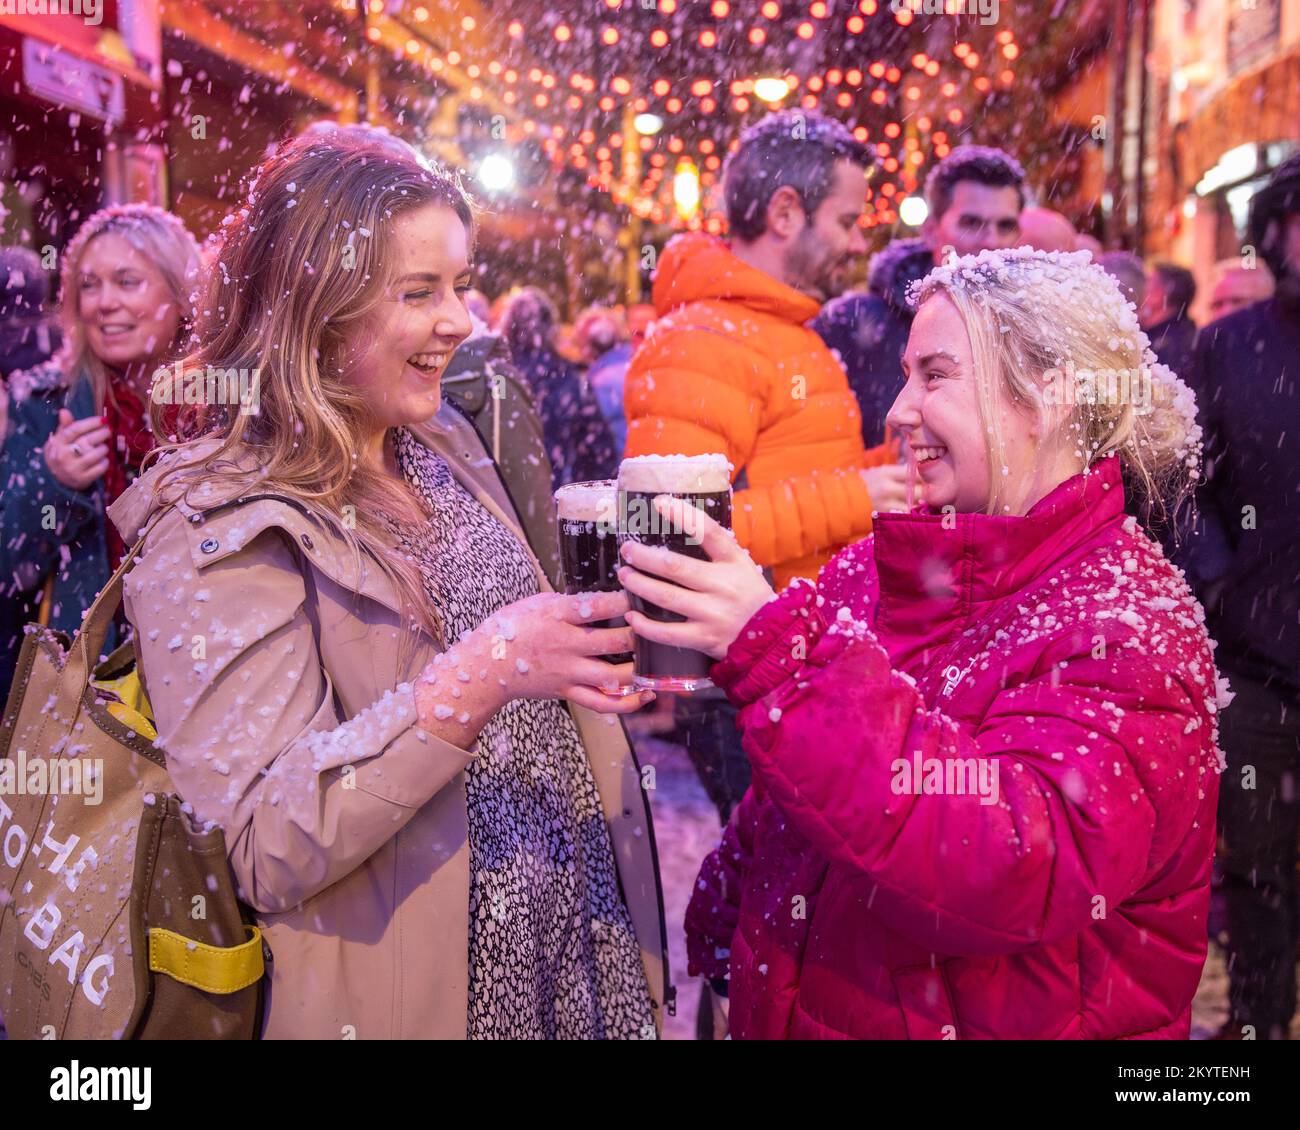 Bronagh McCarron (a sinistra) e Shannon Gillespie sulle strade acciottolate del Commercial Court fuori del bar Duke of York a Belfast, mentre Guinness ha dato vita al suo iconico annuncio natalizio con una macchina da neve mentre gli ospiti sono stati accolti da una pinta per iniziare le feste. Foto Stock